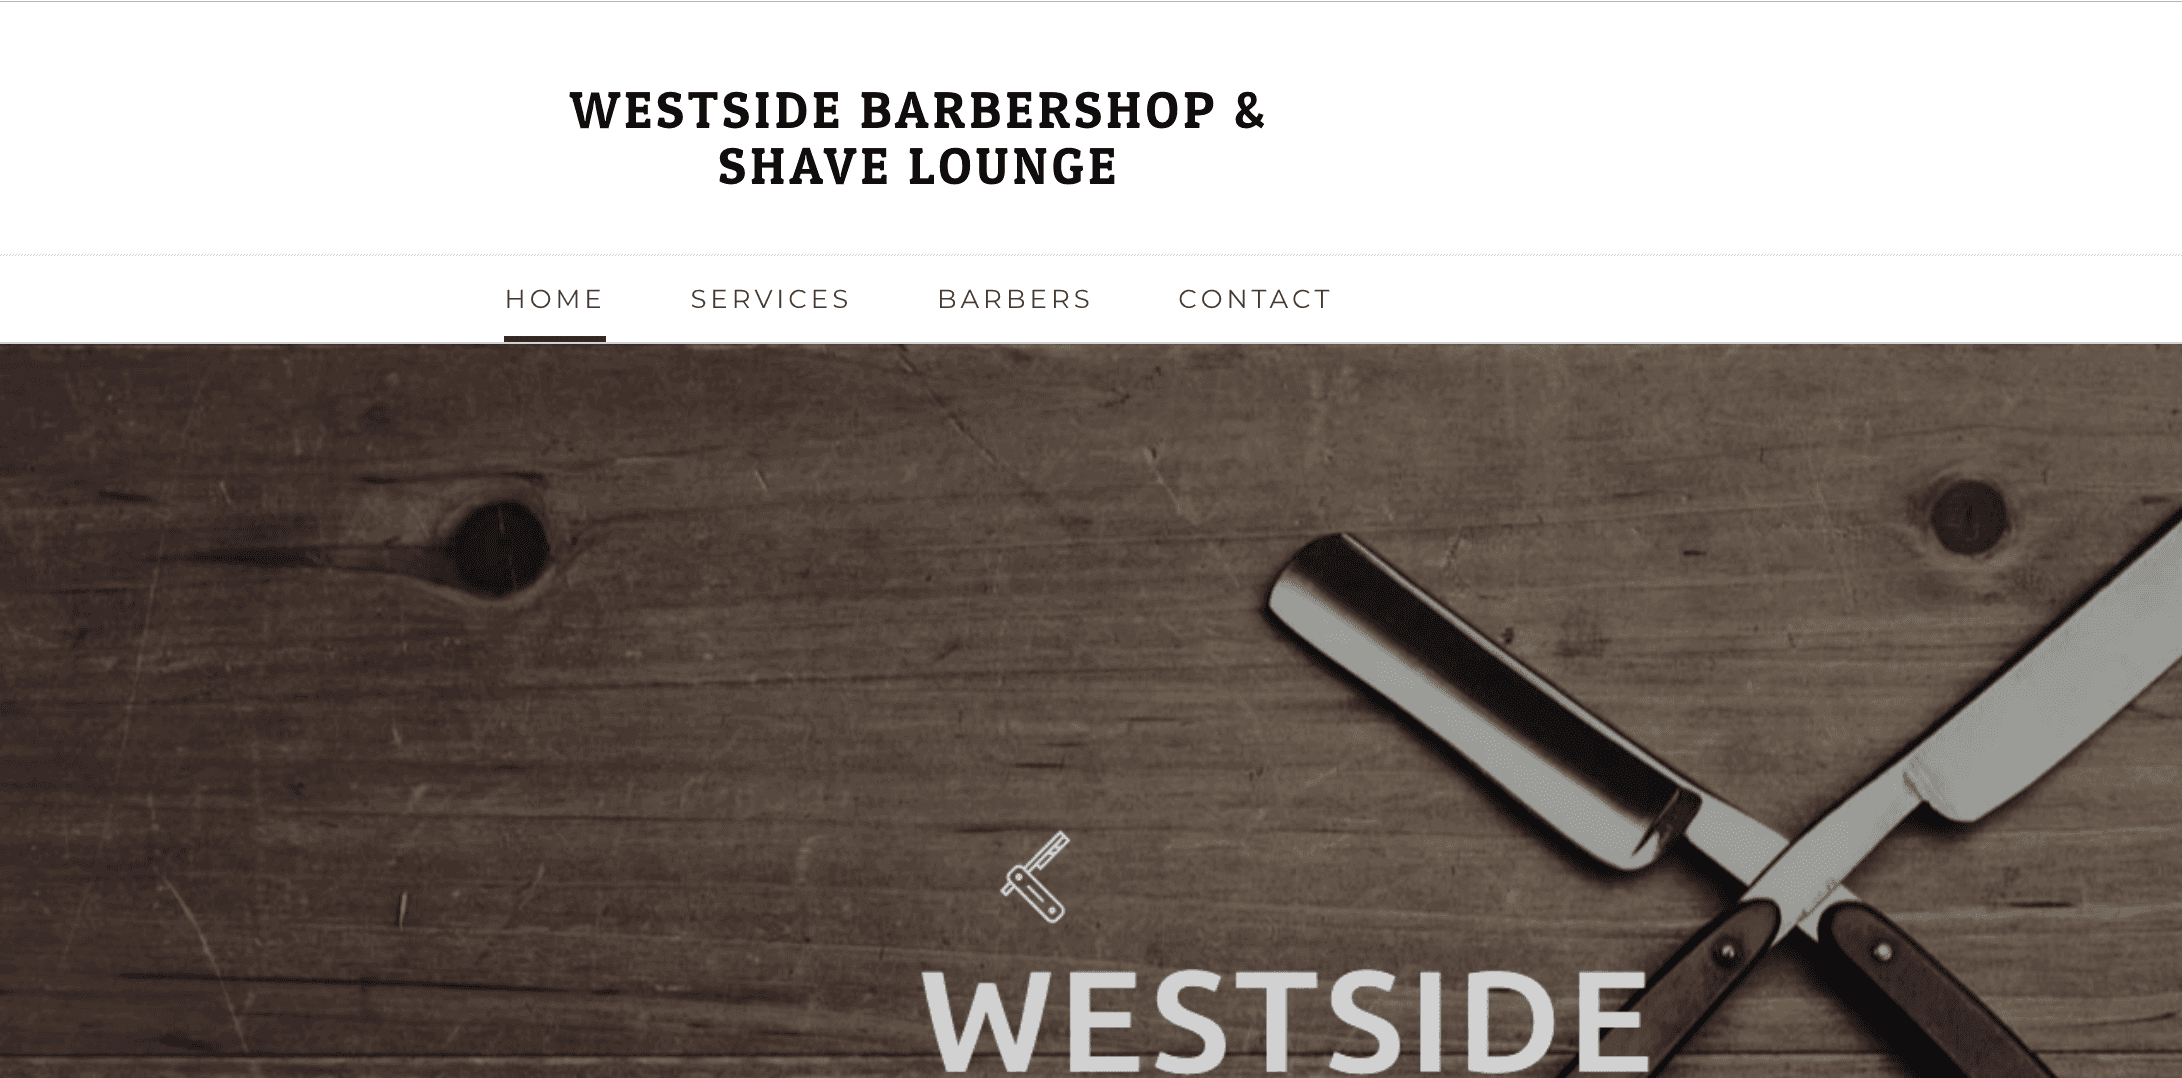 Westside Barbershop & Shave Lounge